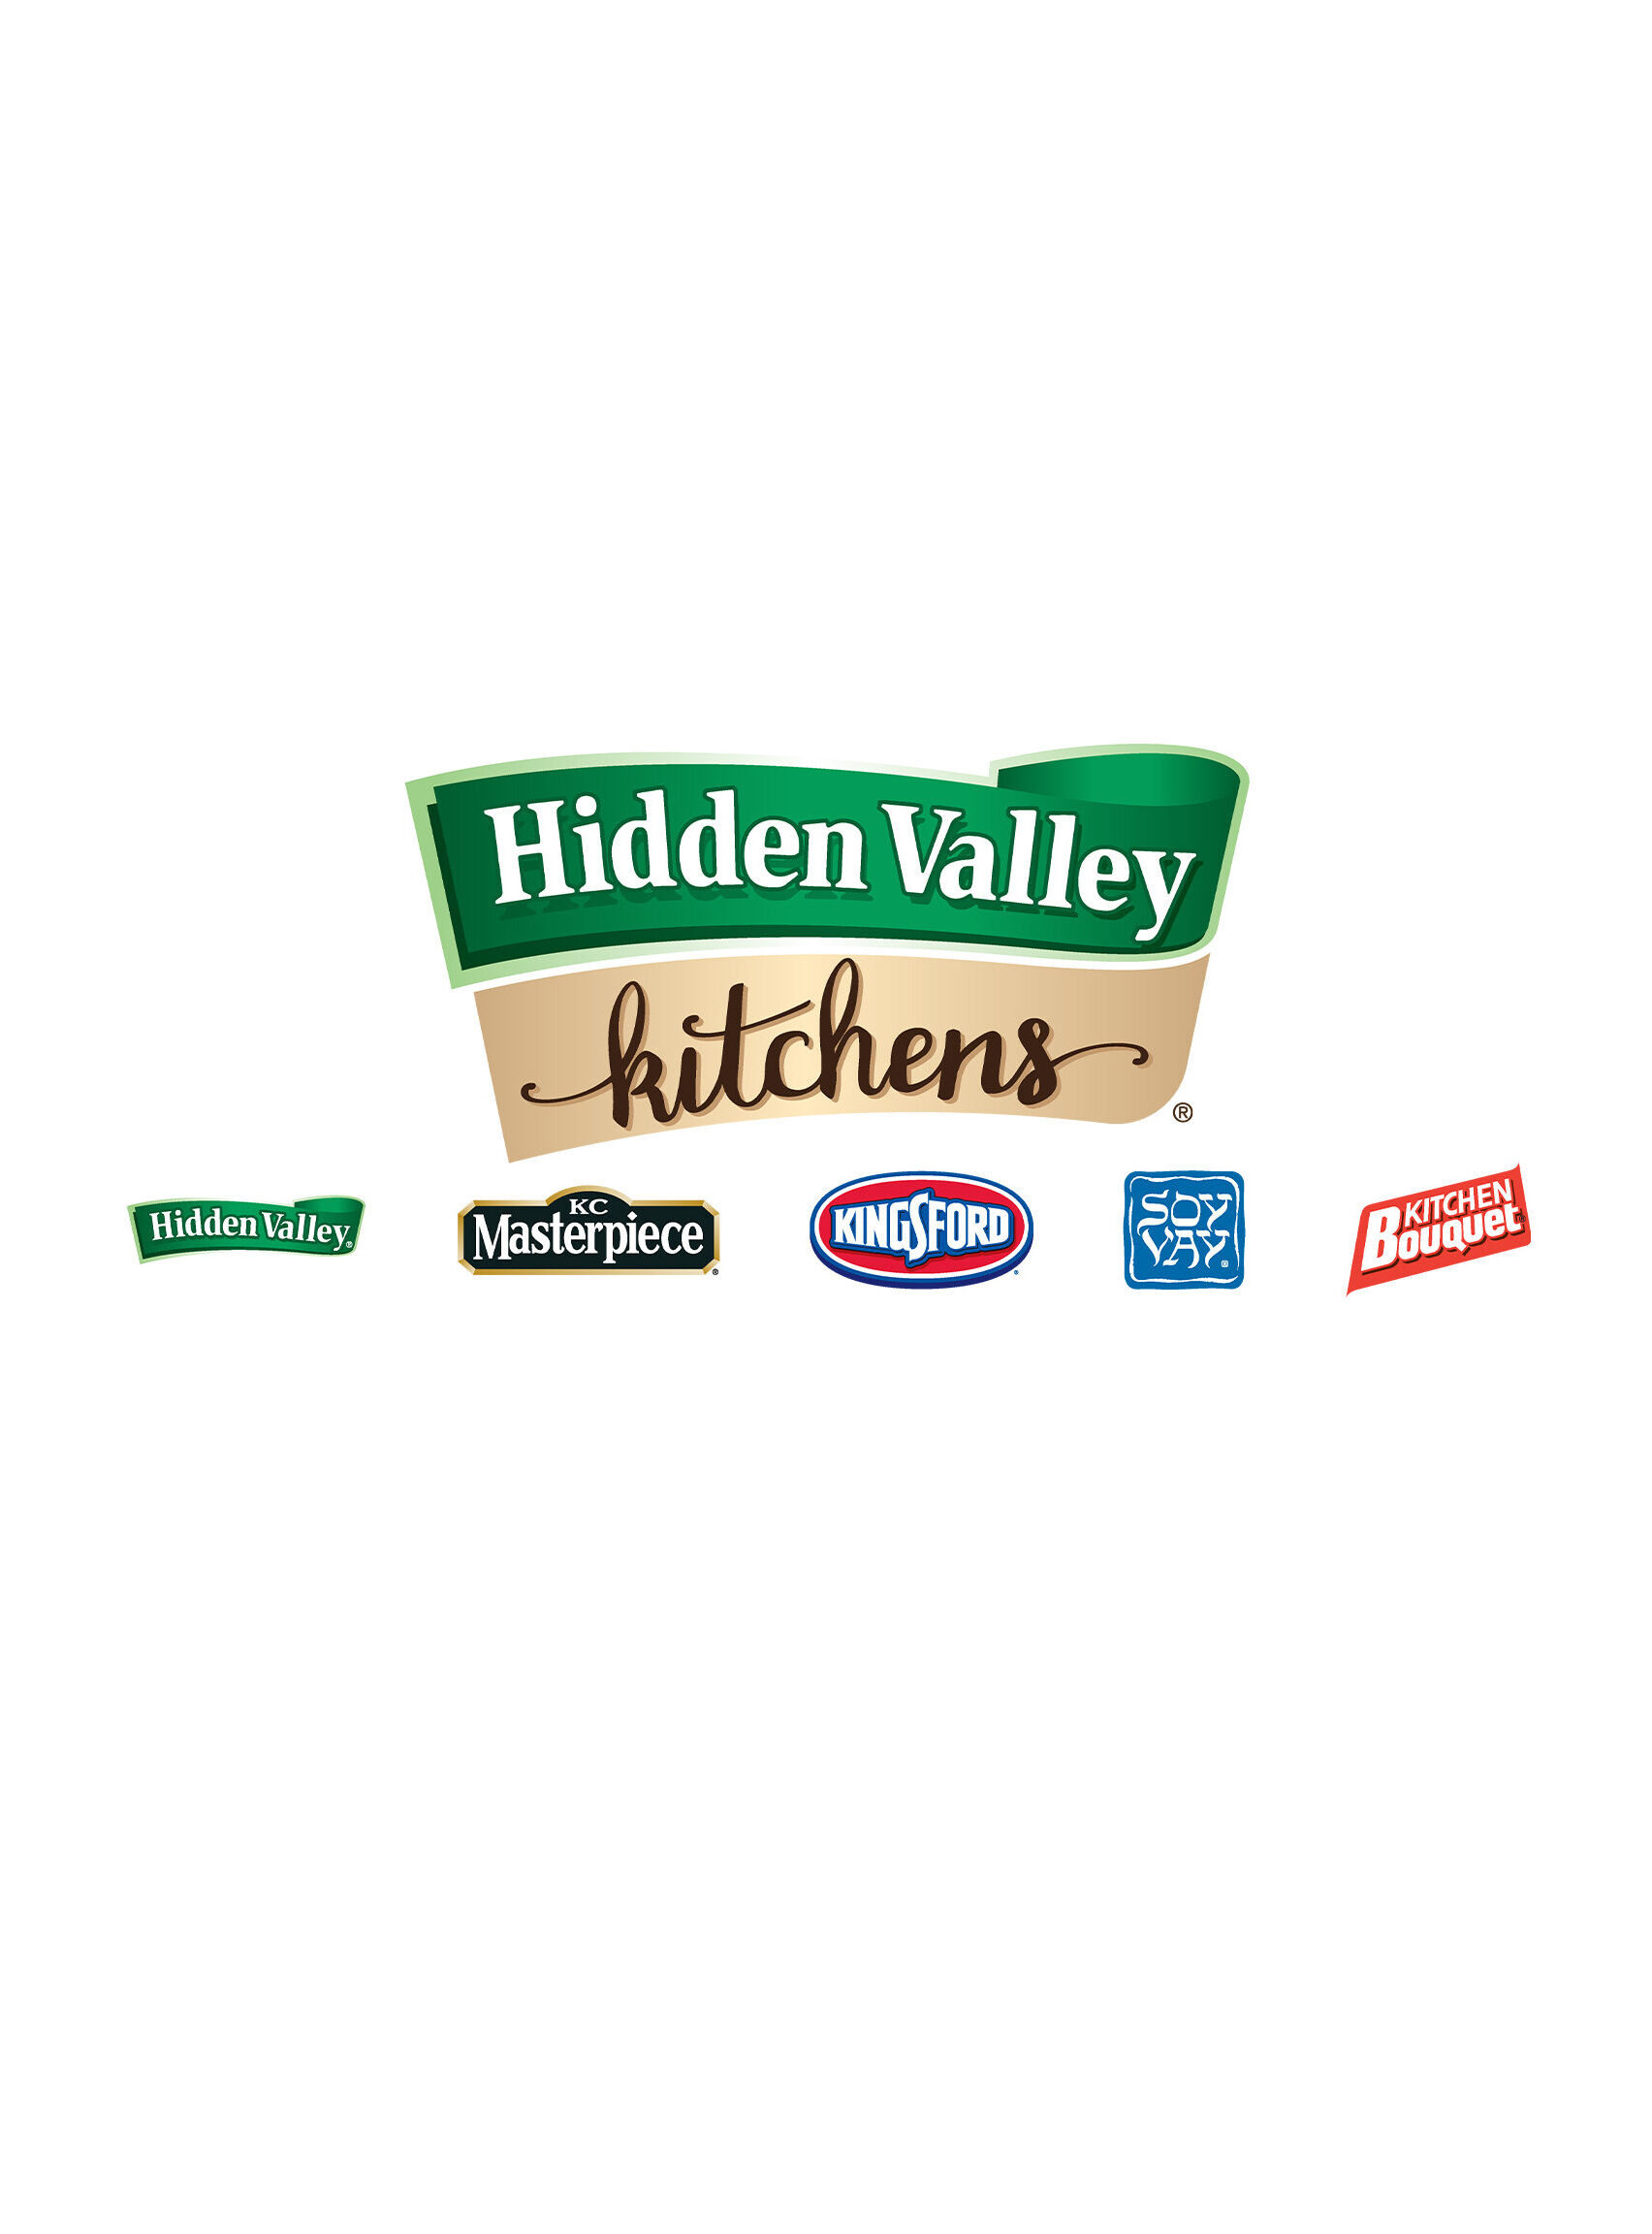 Hidden Valley Kitchens Ad